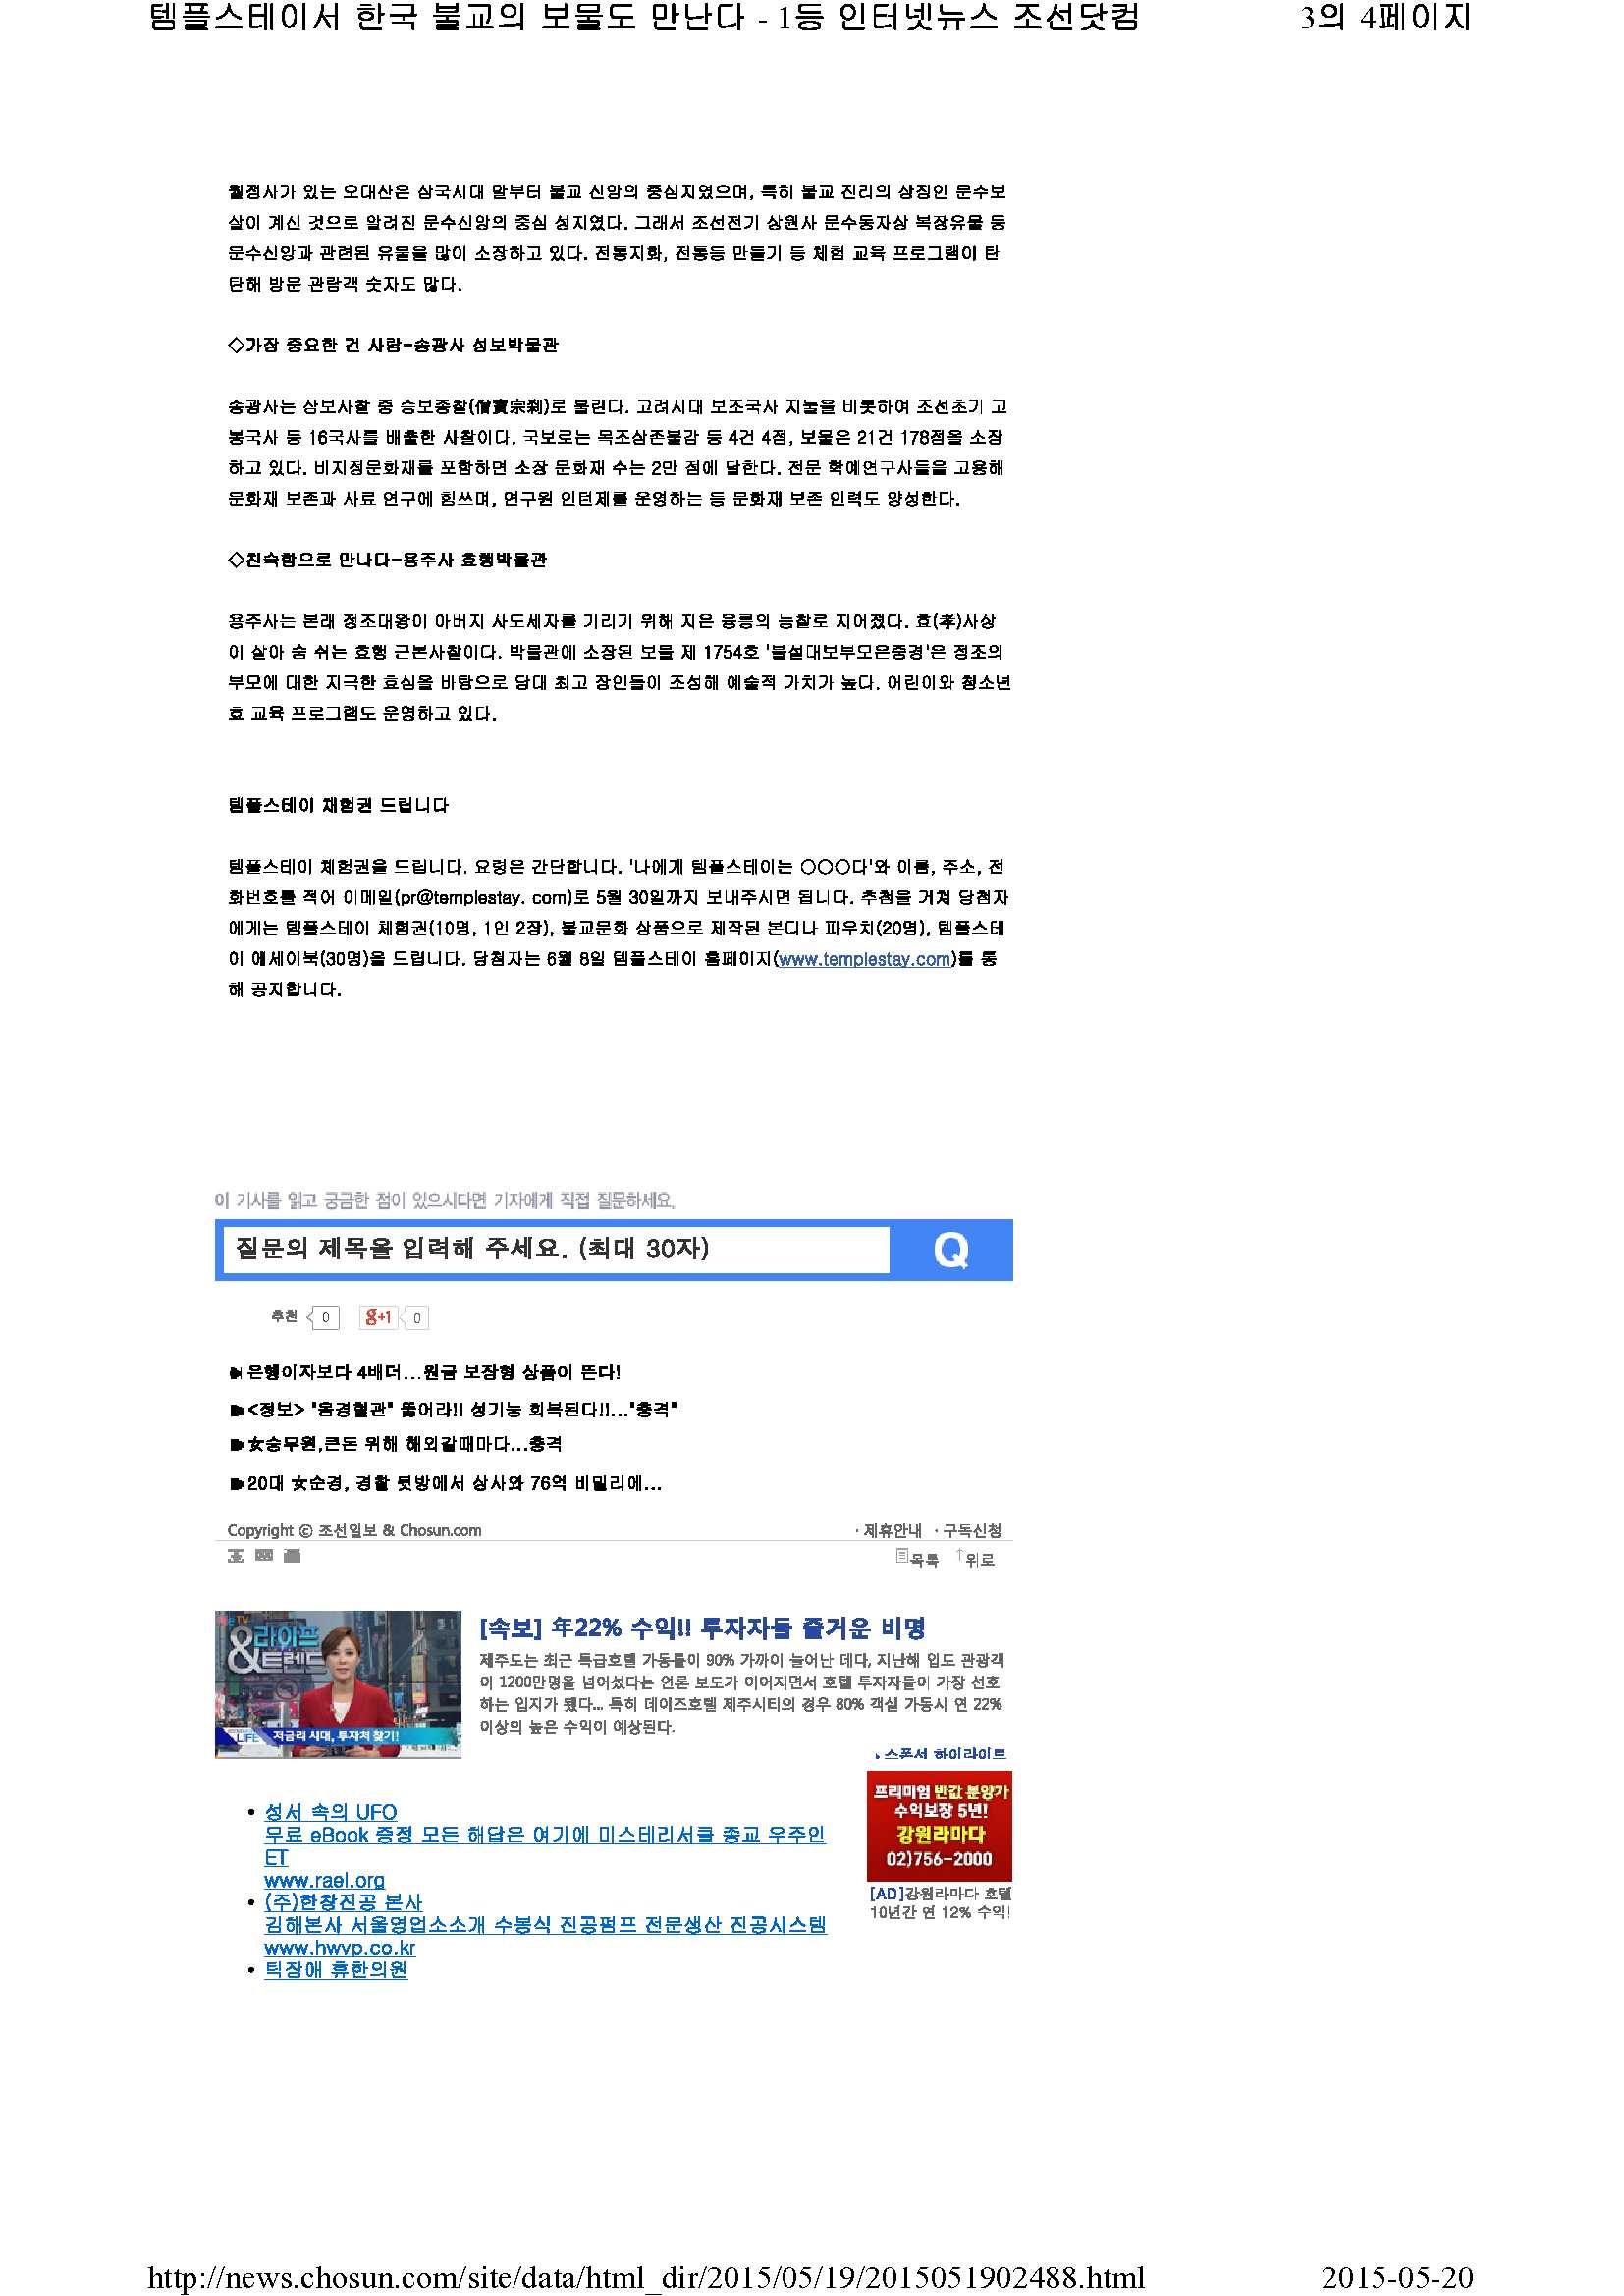 조산일보(문화면2)_3.jpg